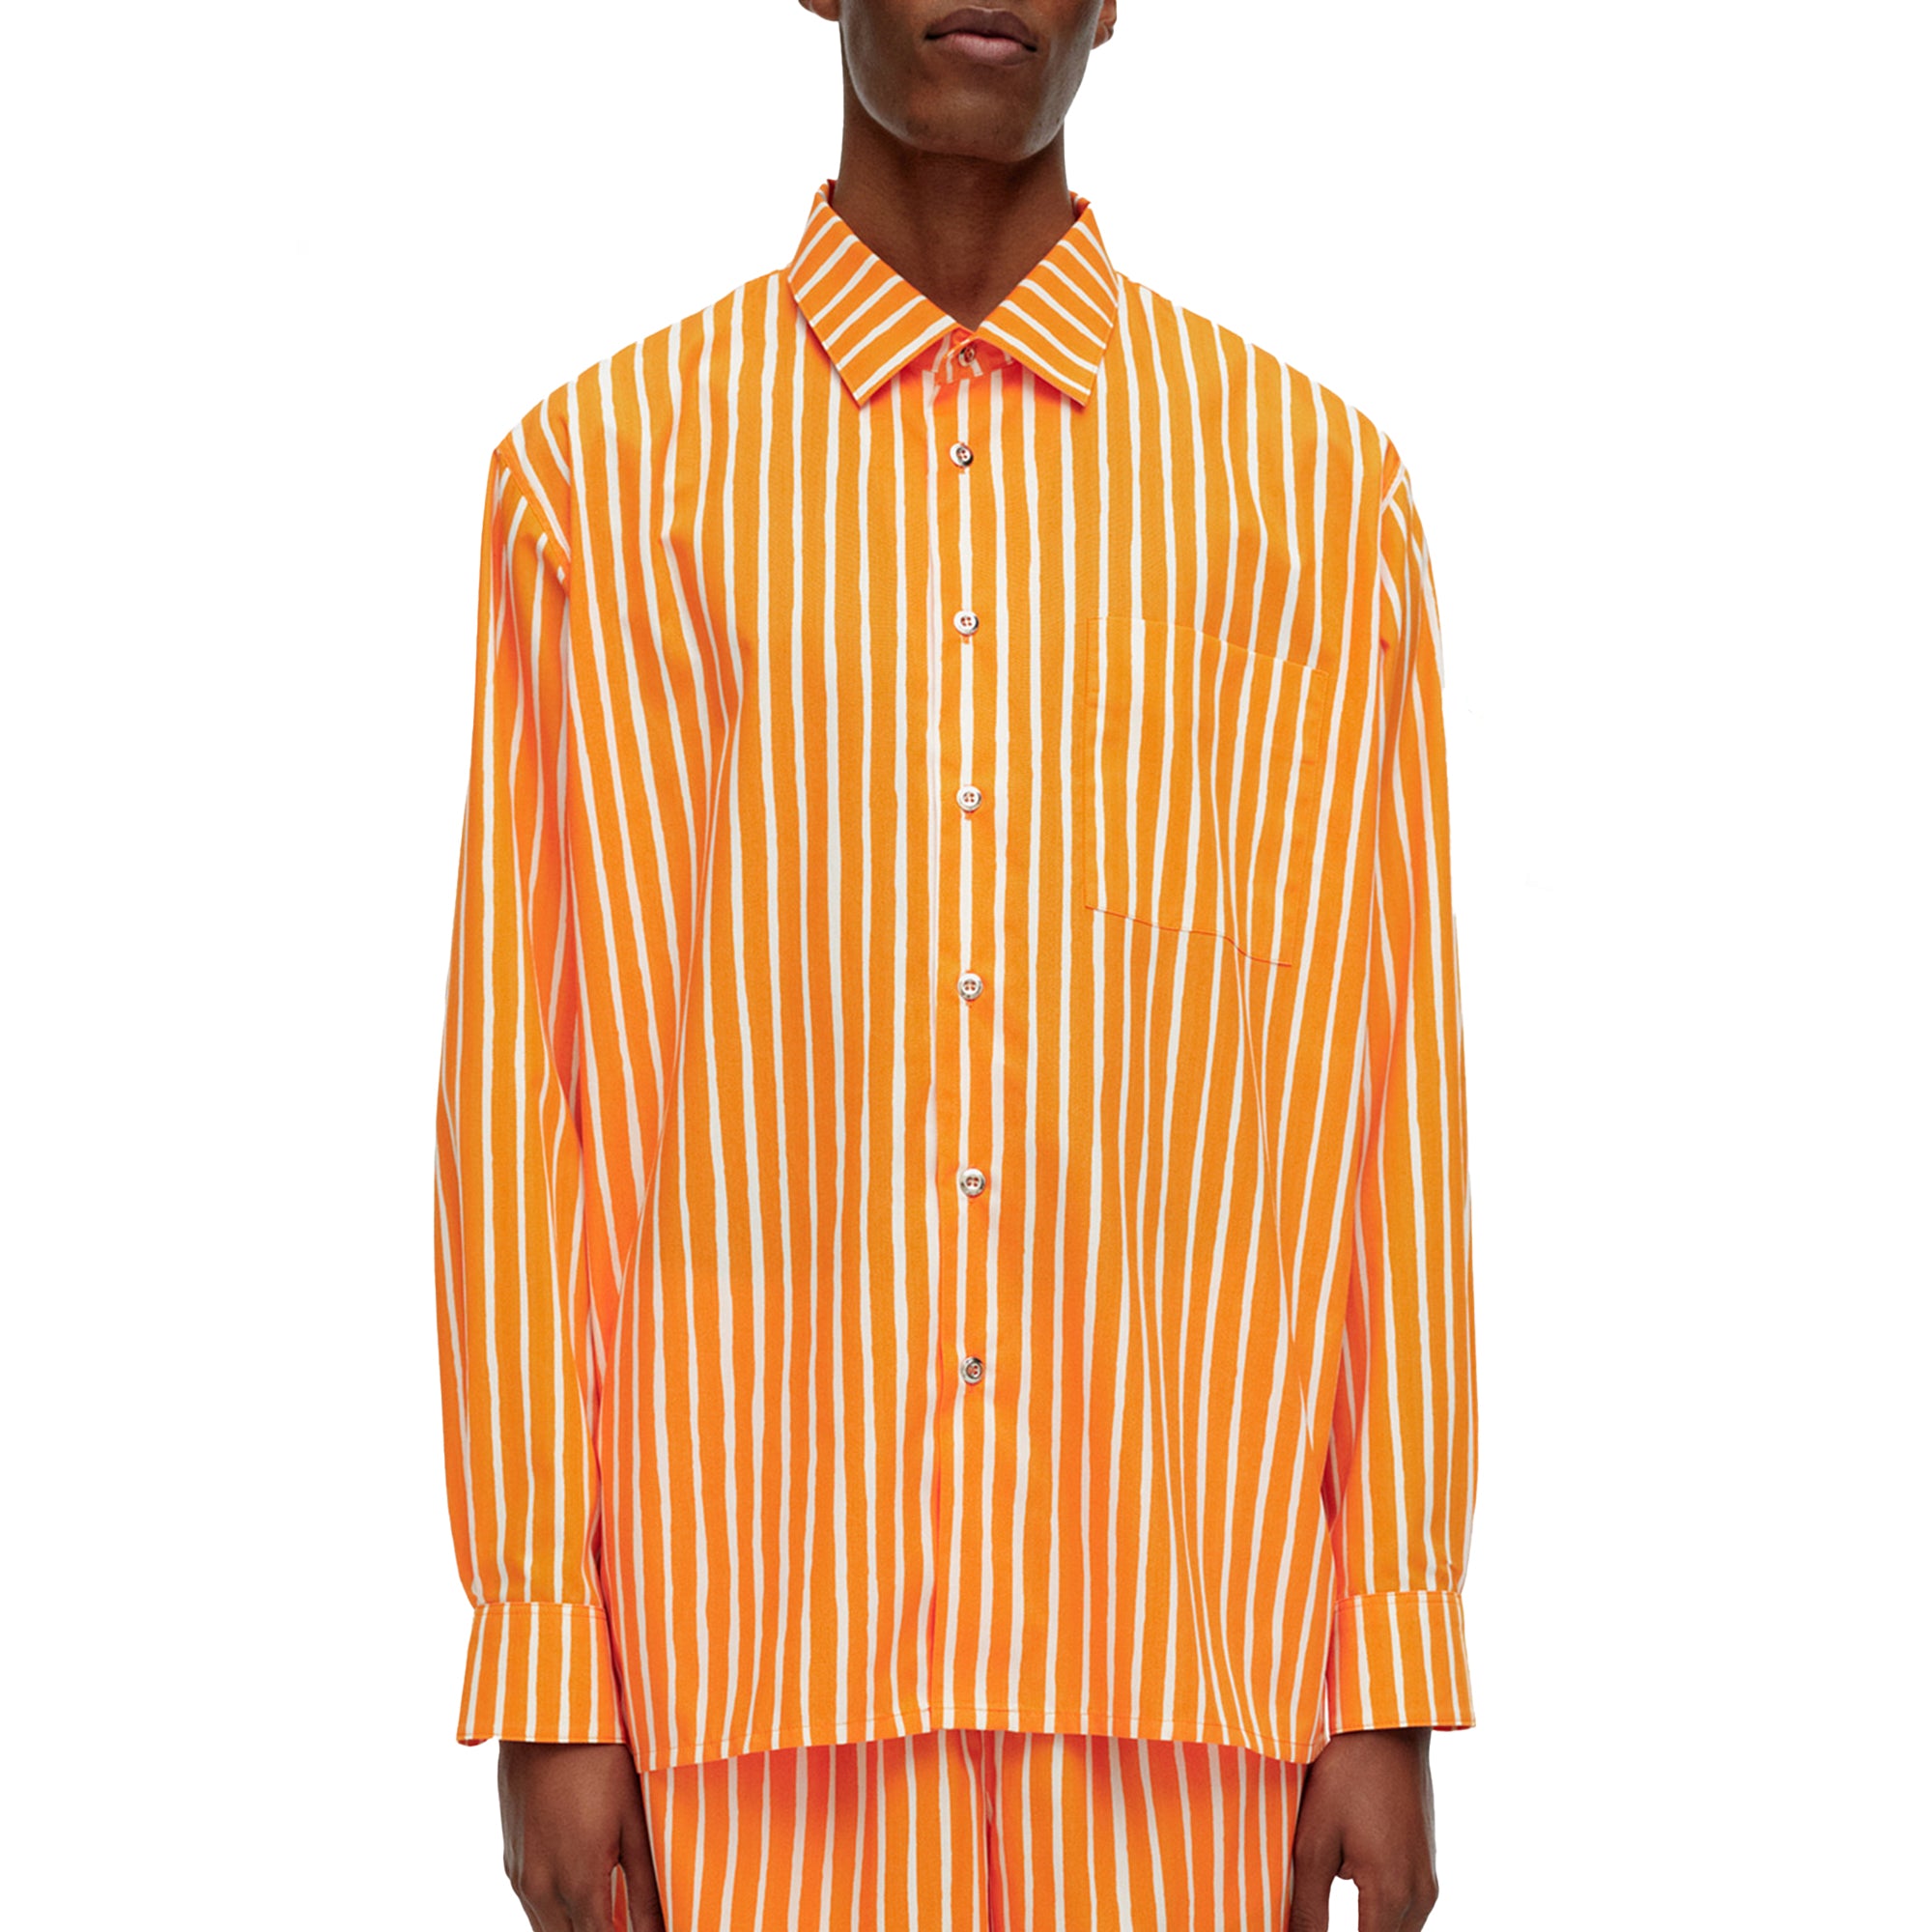 Jokapoika Shirt - Orange + White